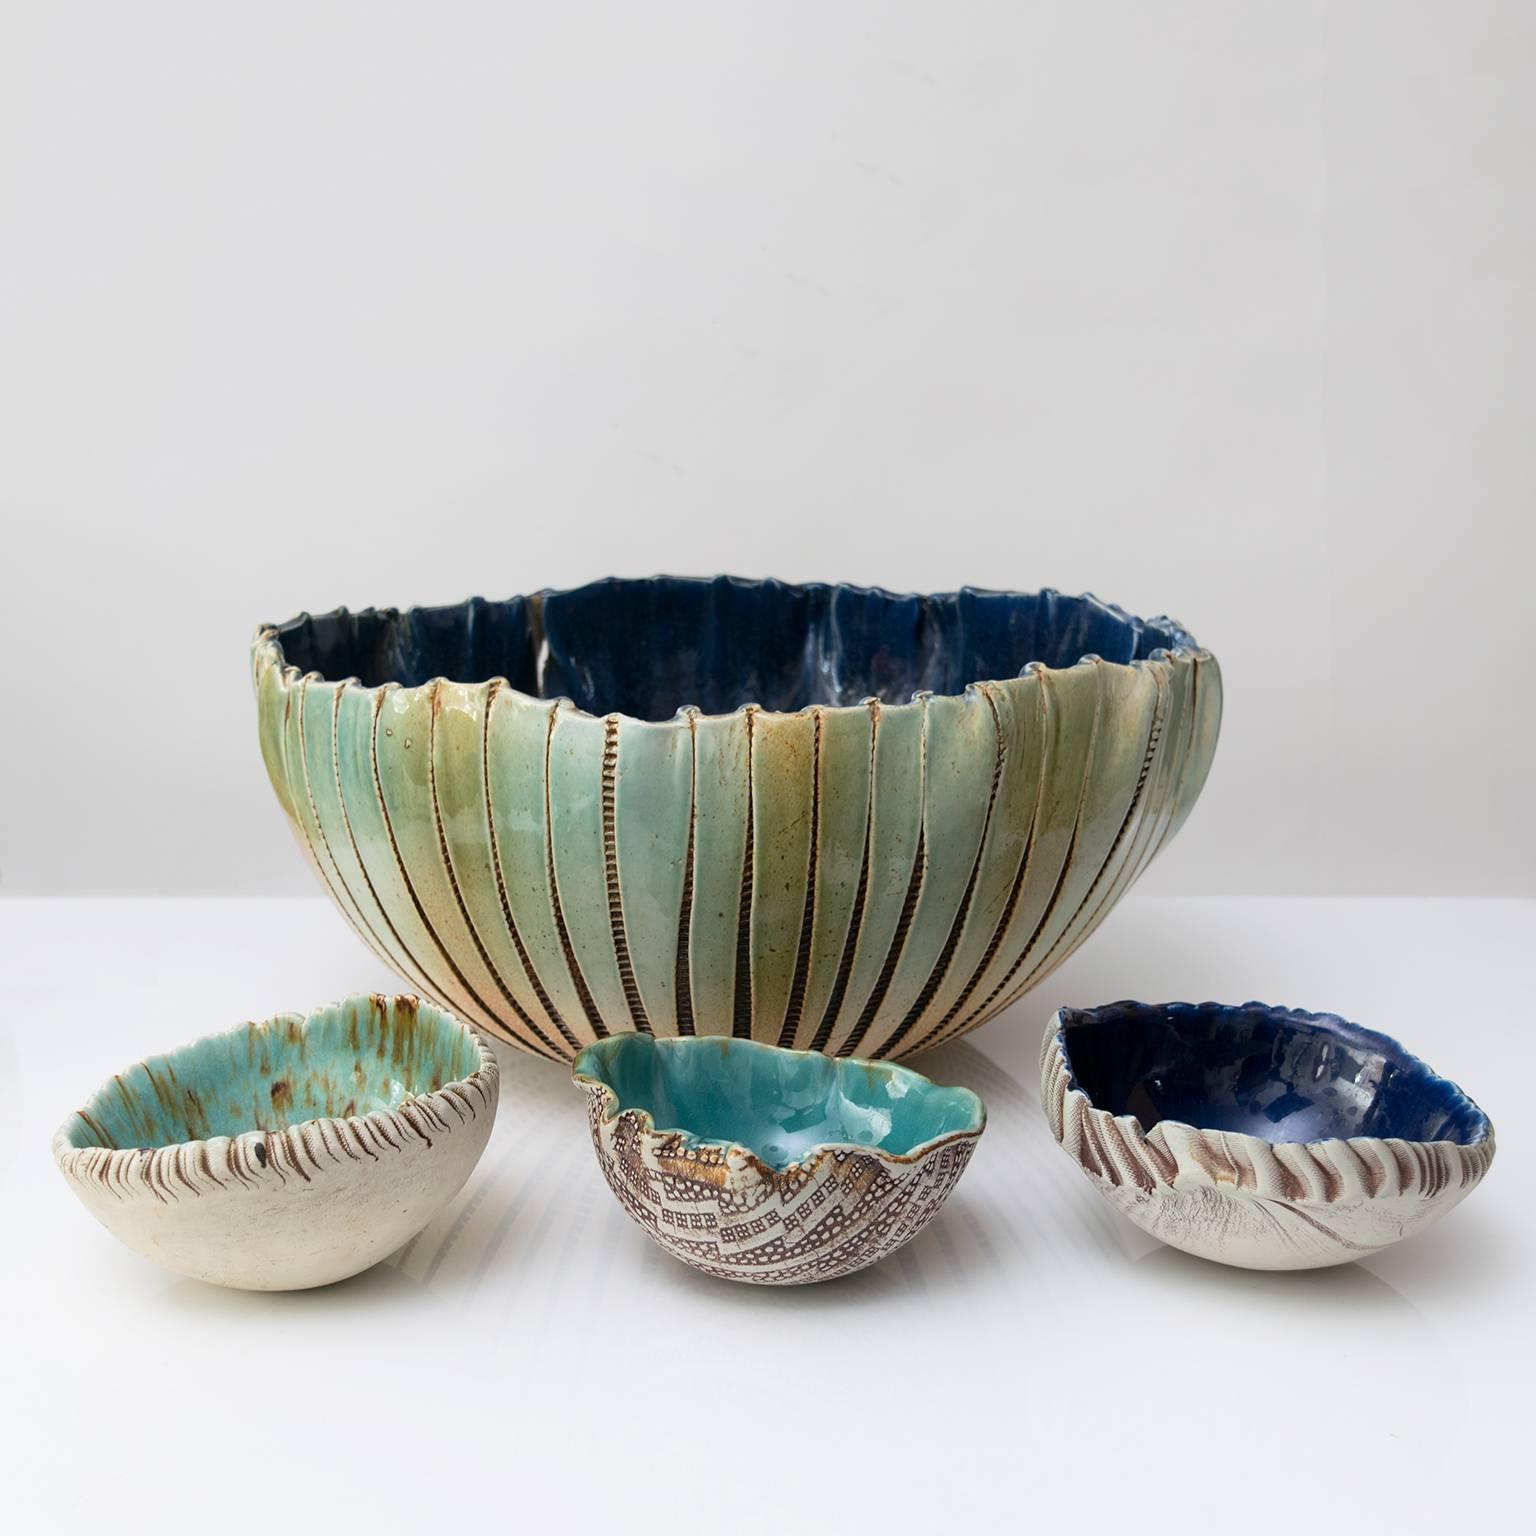 Ceramic Three Scandinavian Modern Hand Built and Glazed Bowls by Artist Bengt Berglund